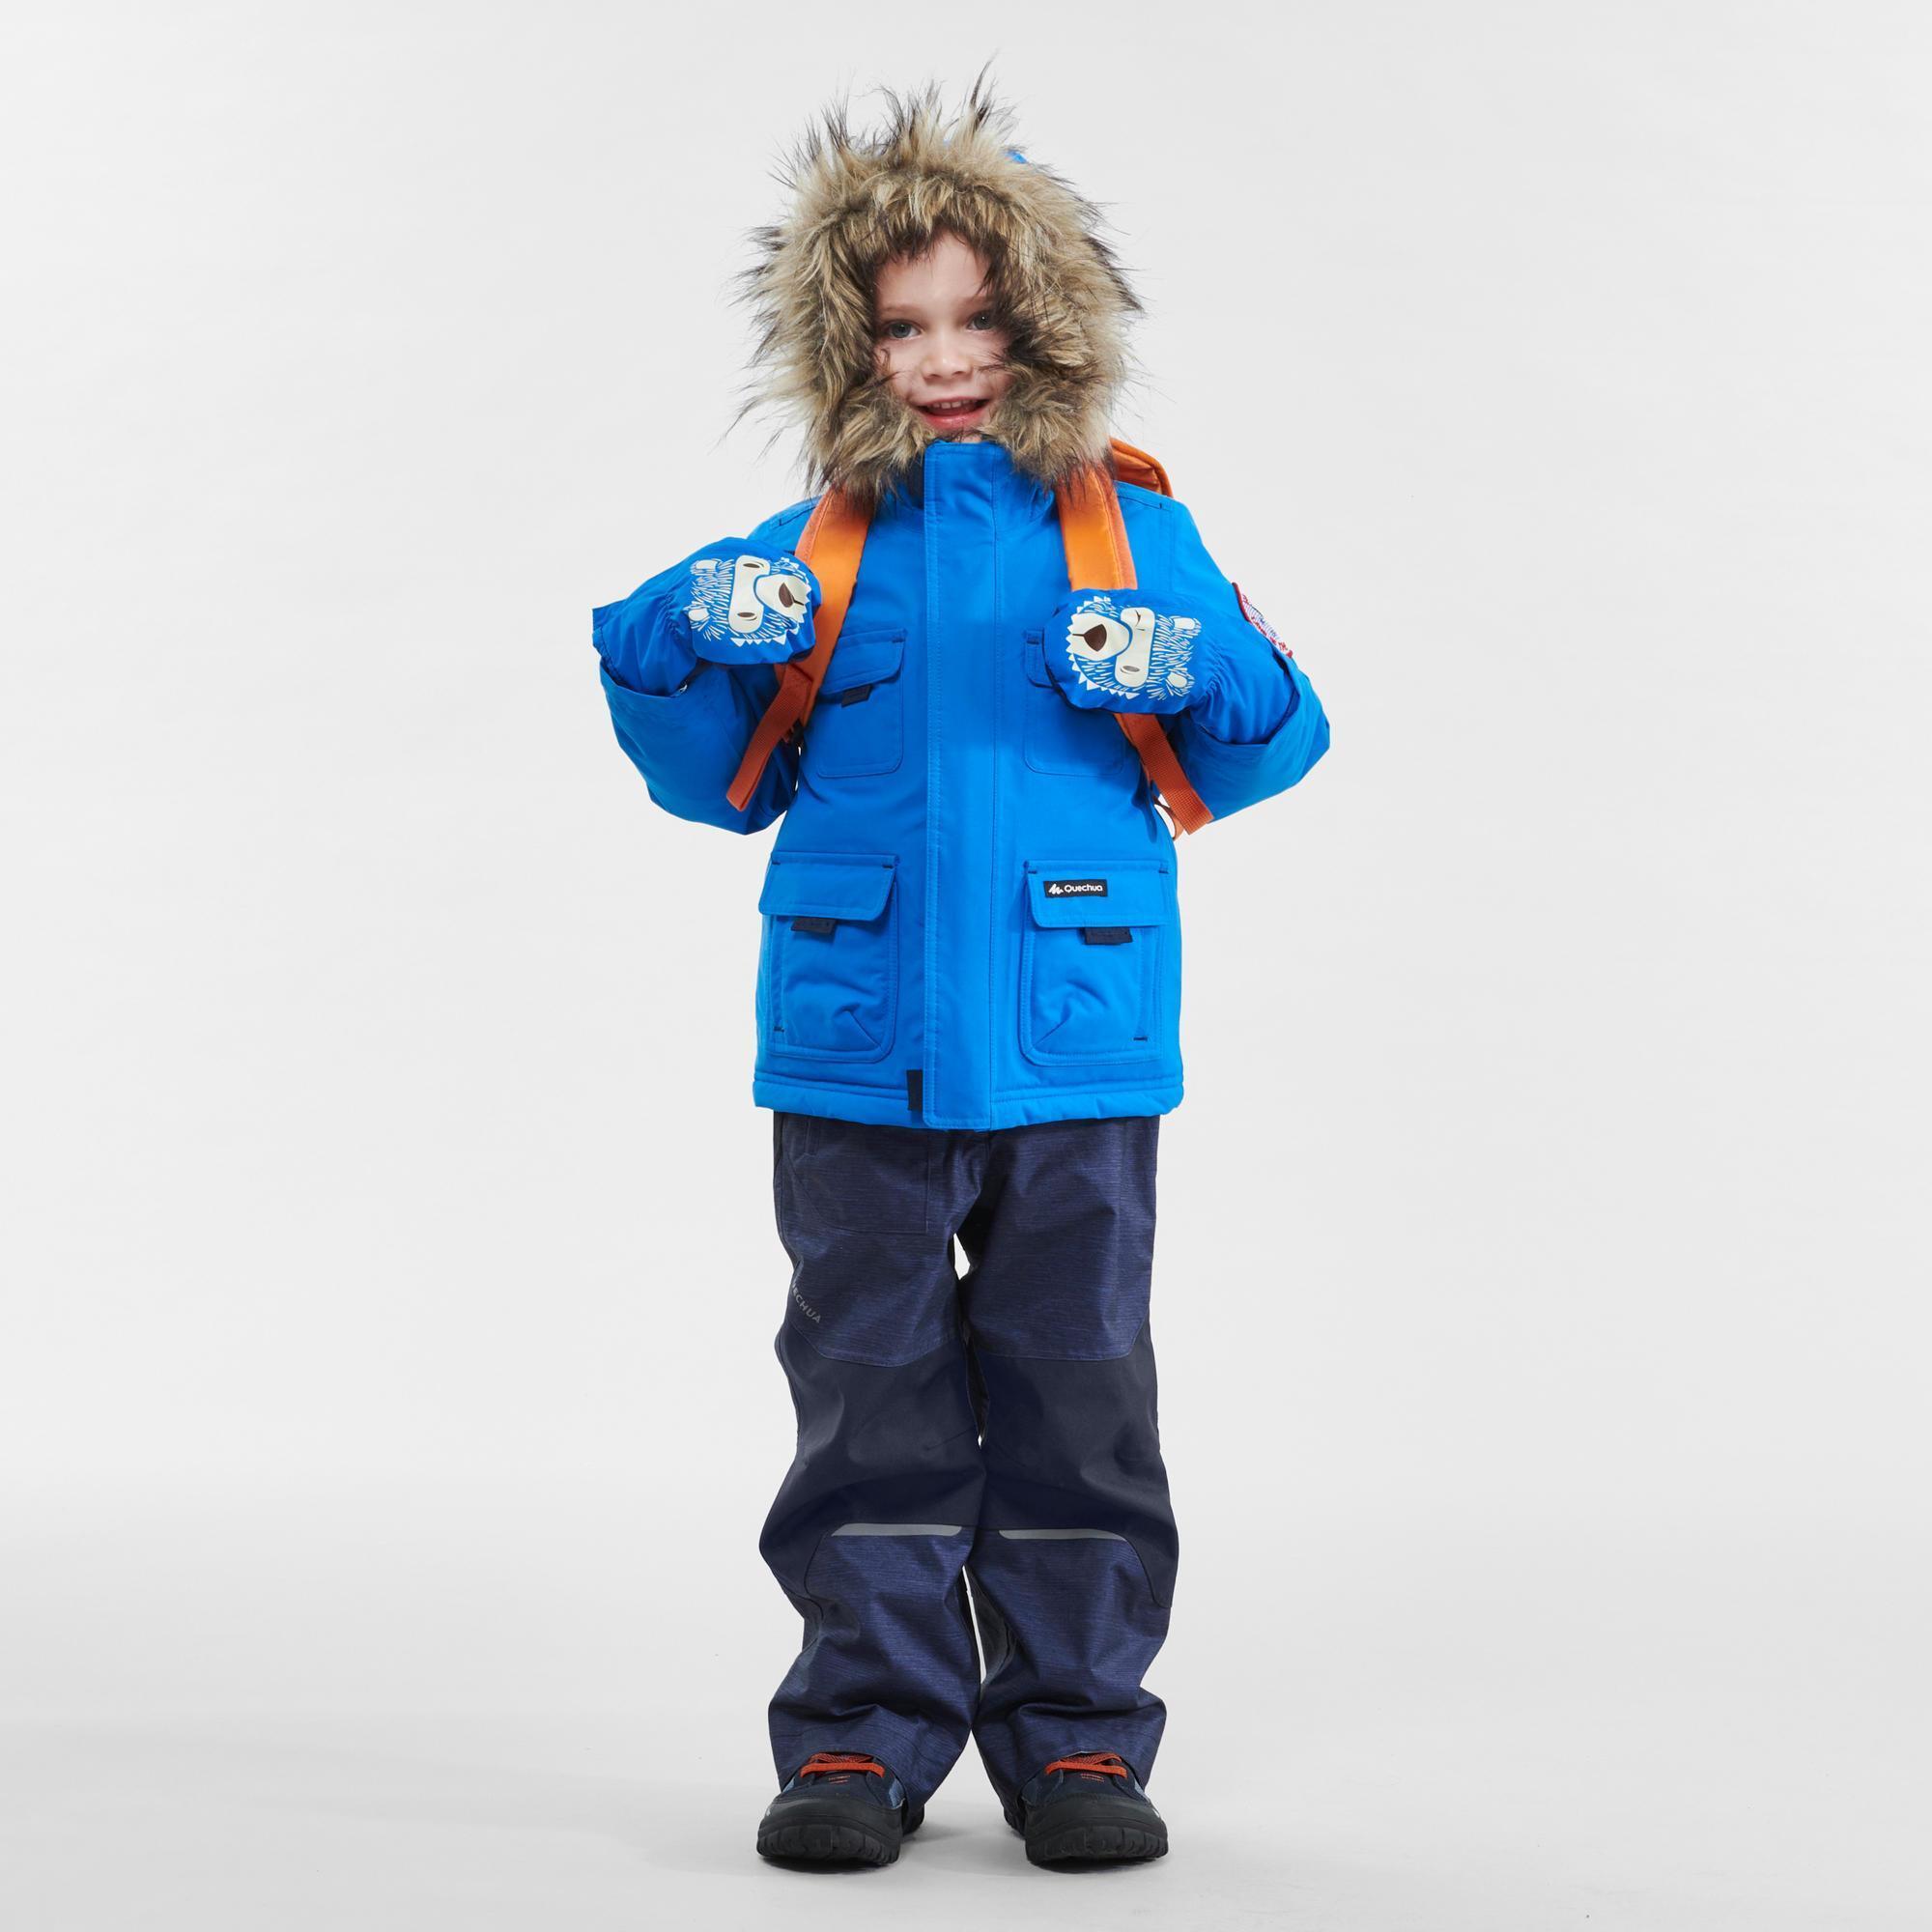 Kids’ Winter Waterproof Hiking Parka SH500 Ultra-Warm 2-6 Years 4/9